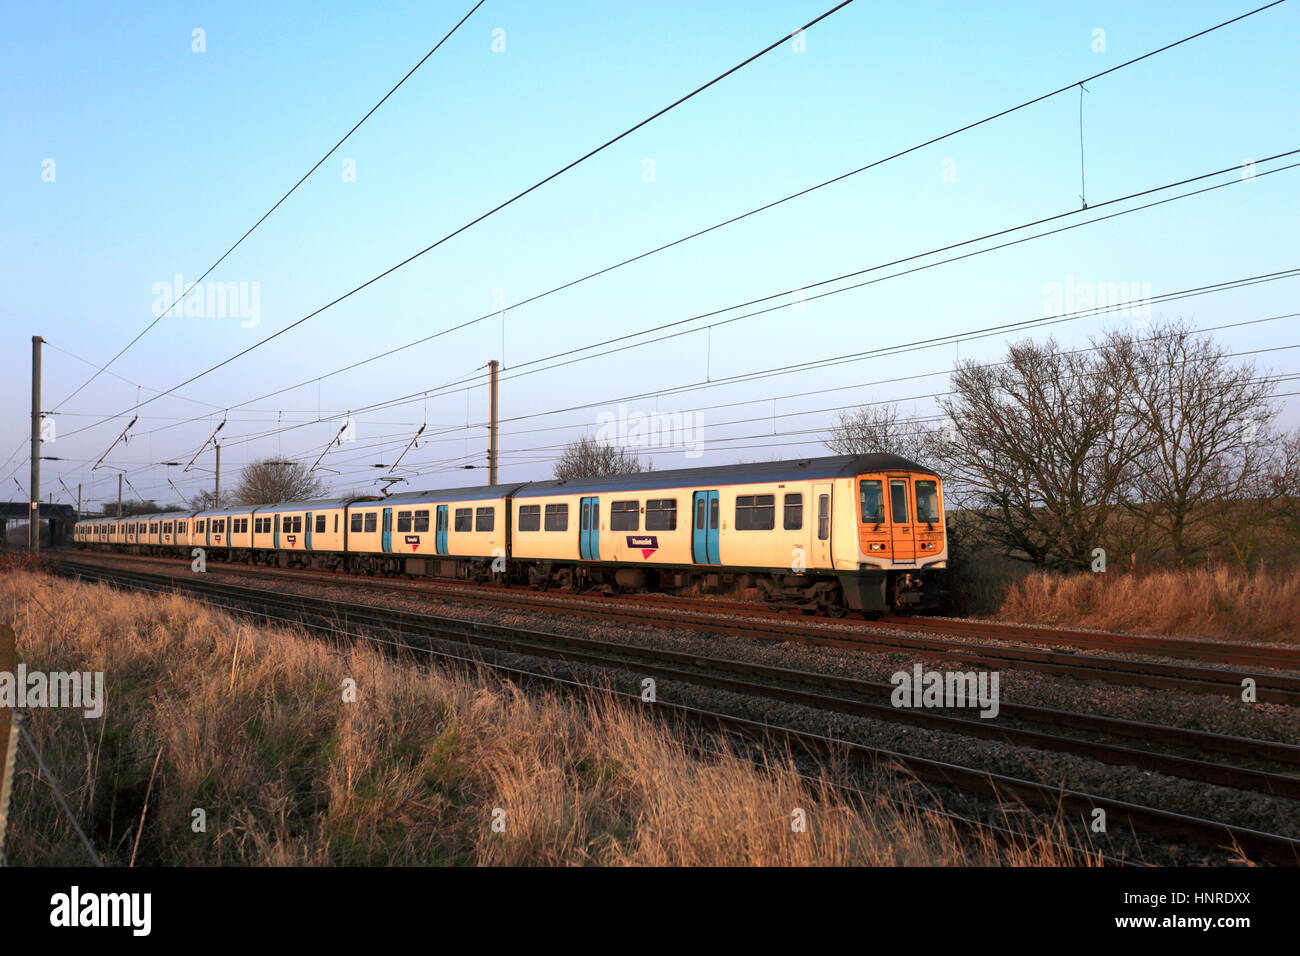 L'UEM 319 373 trains Thameslink, entre Bedford et luton, Bedfordshire, Angleterre Banque D'Images